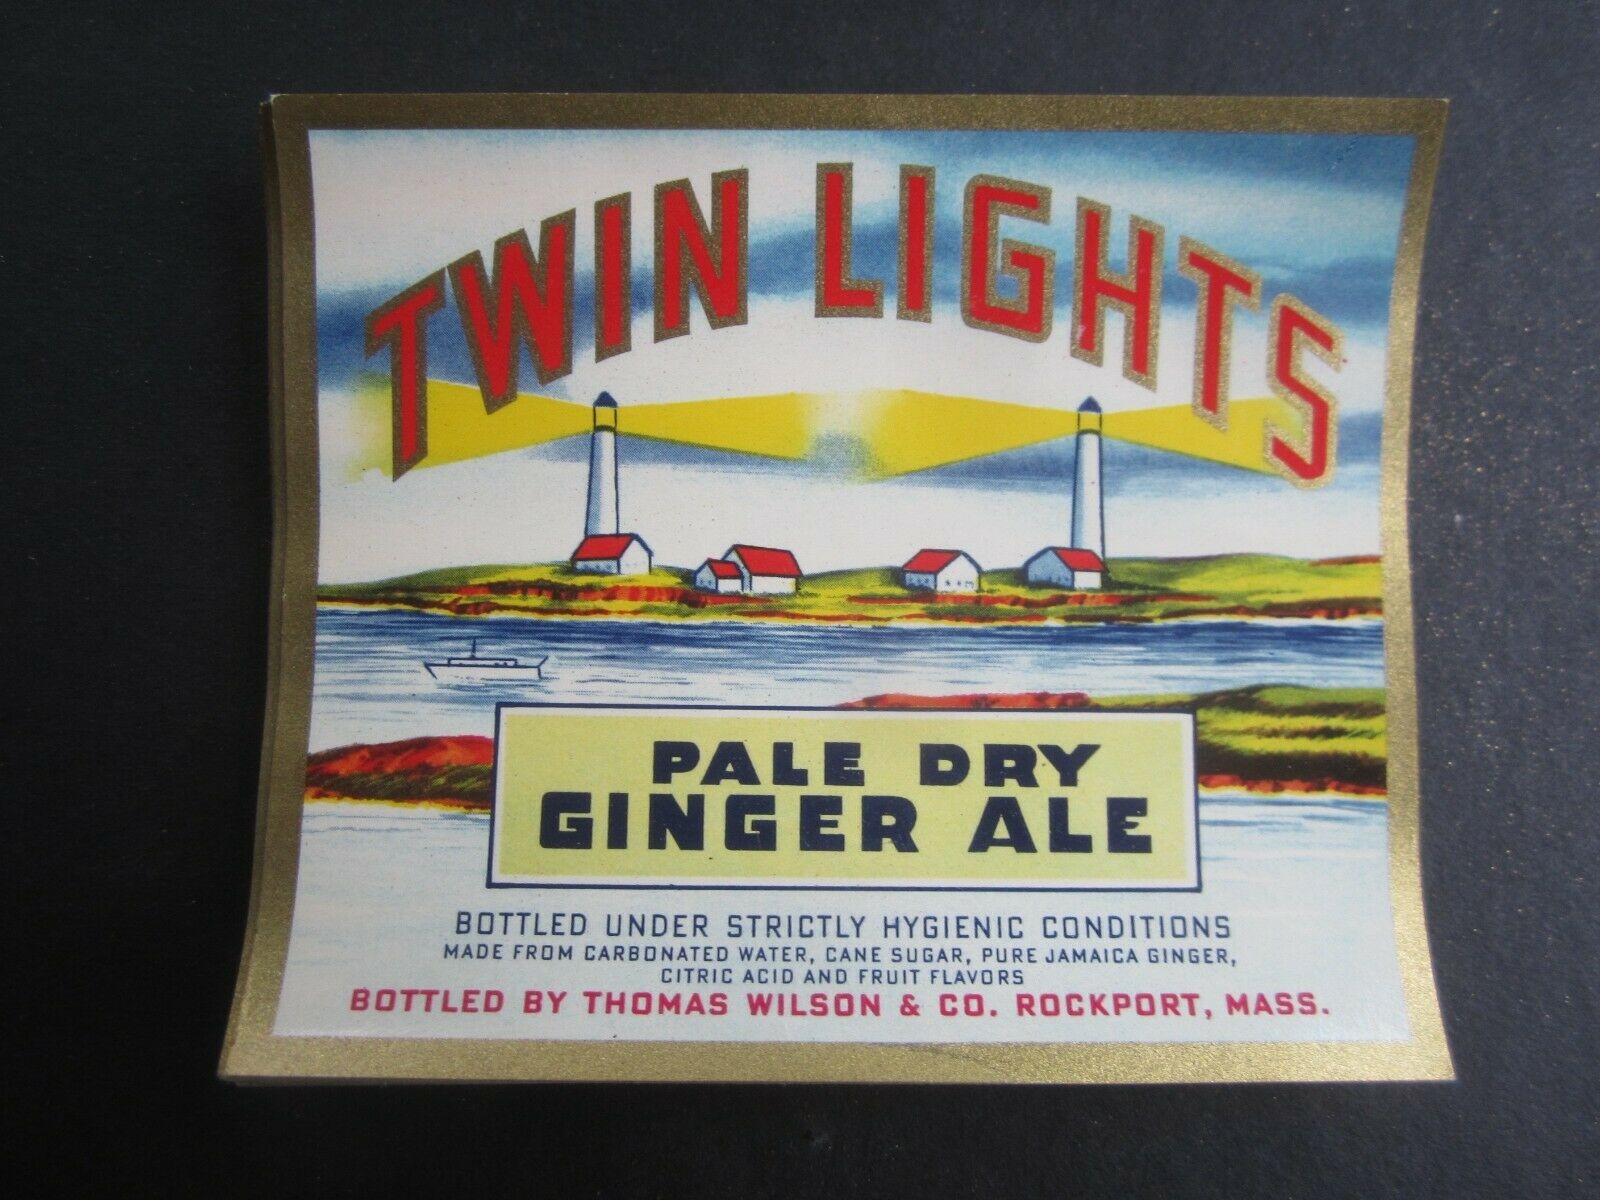  Lot of 50 Old Vintage TWIN LIGHTS Ginger Ale S...